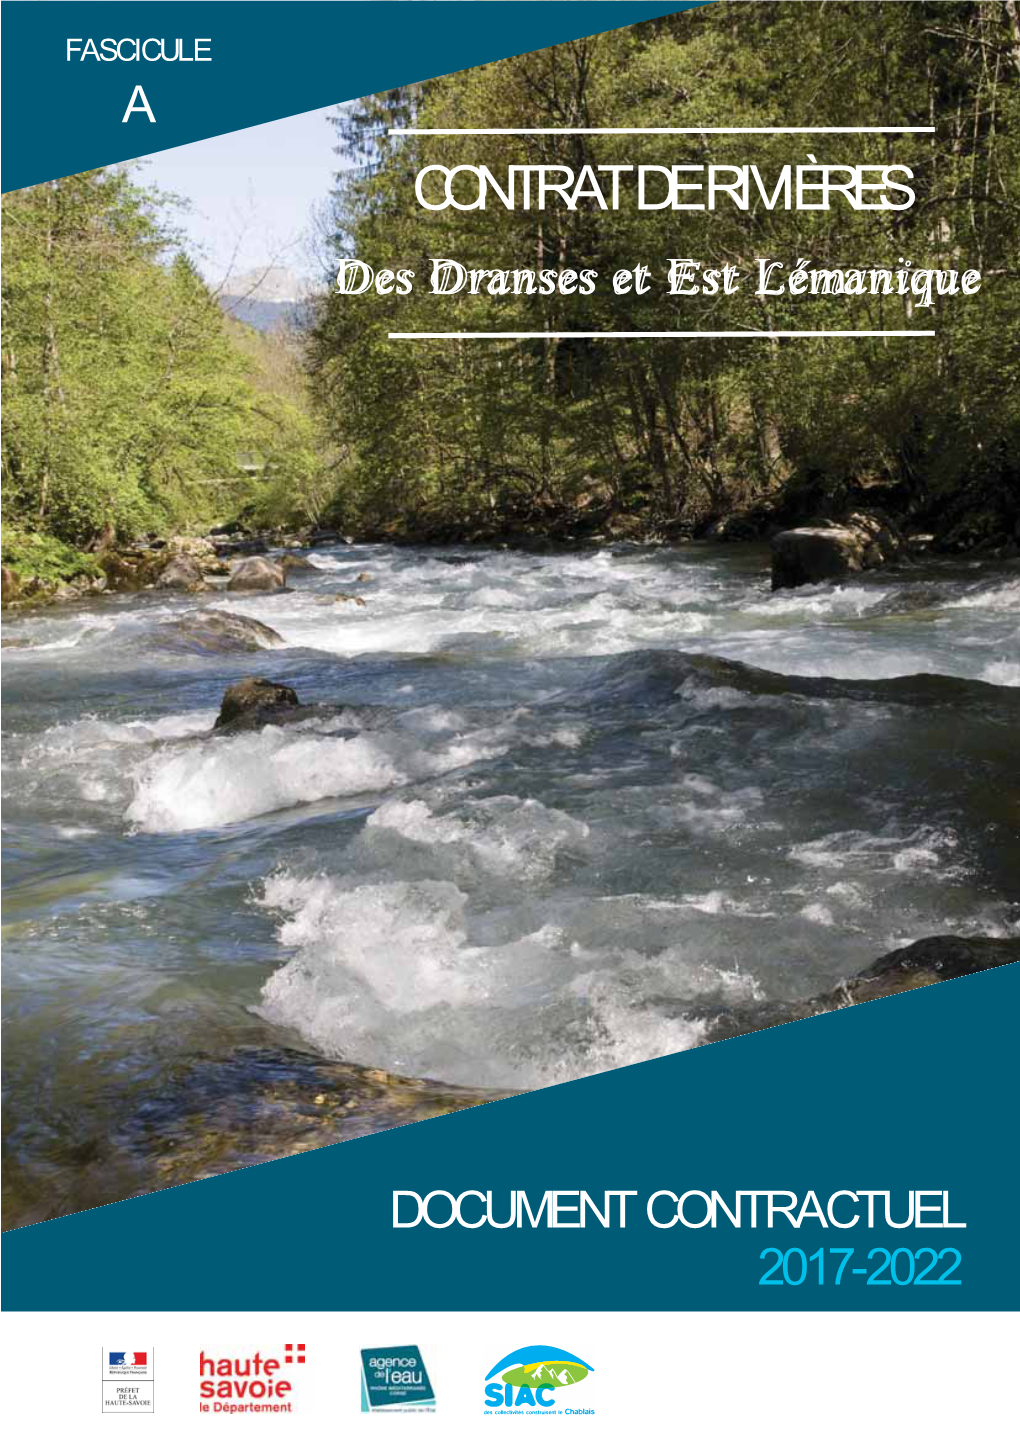 Fascicule a Du Contrat De Rivières Des Dranses Et De L'est Lémanique